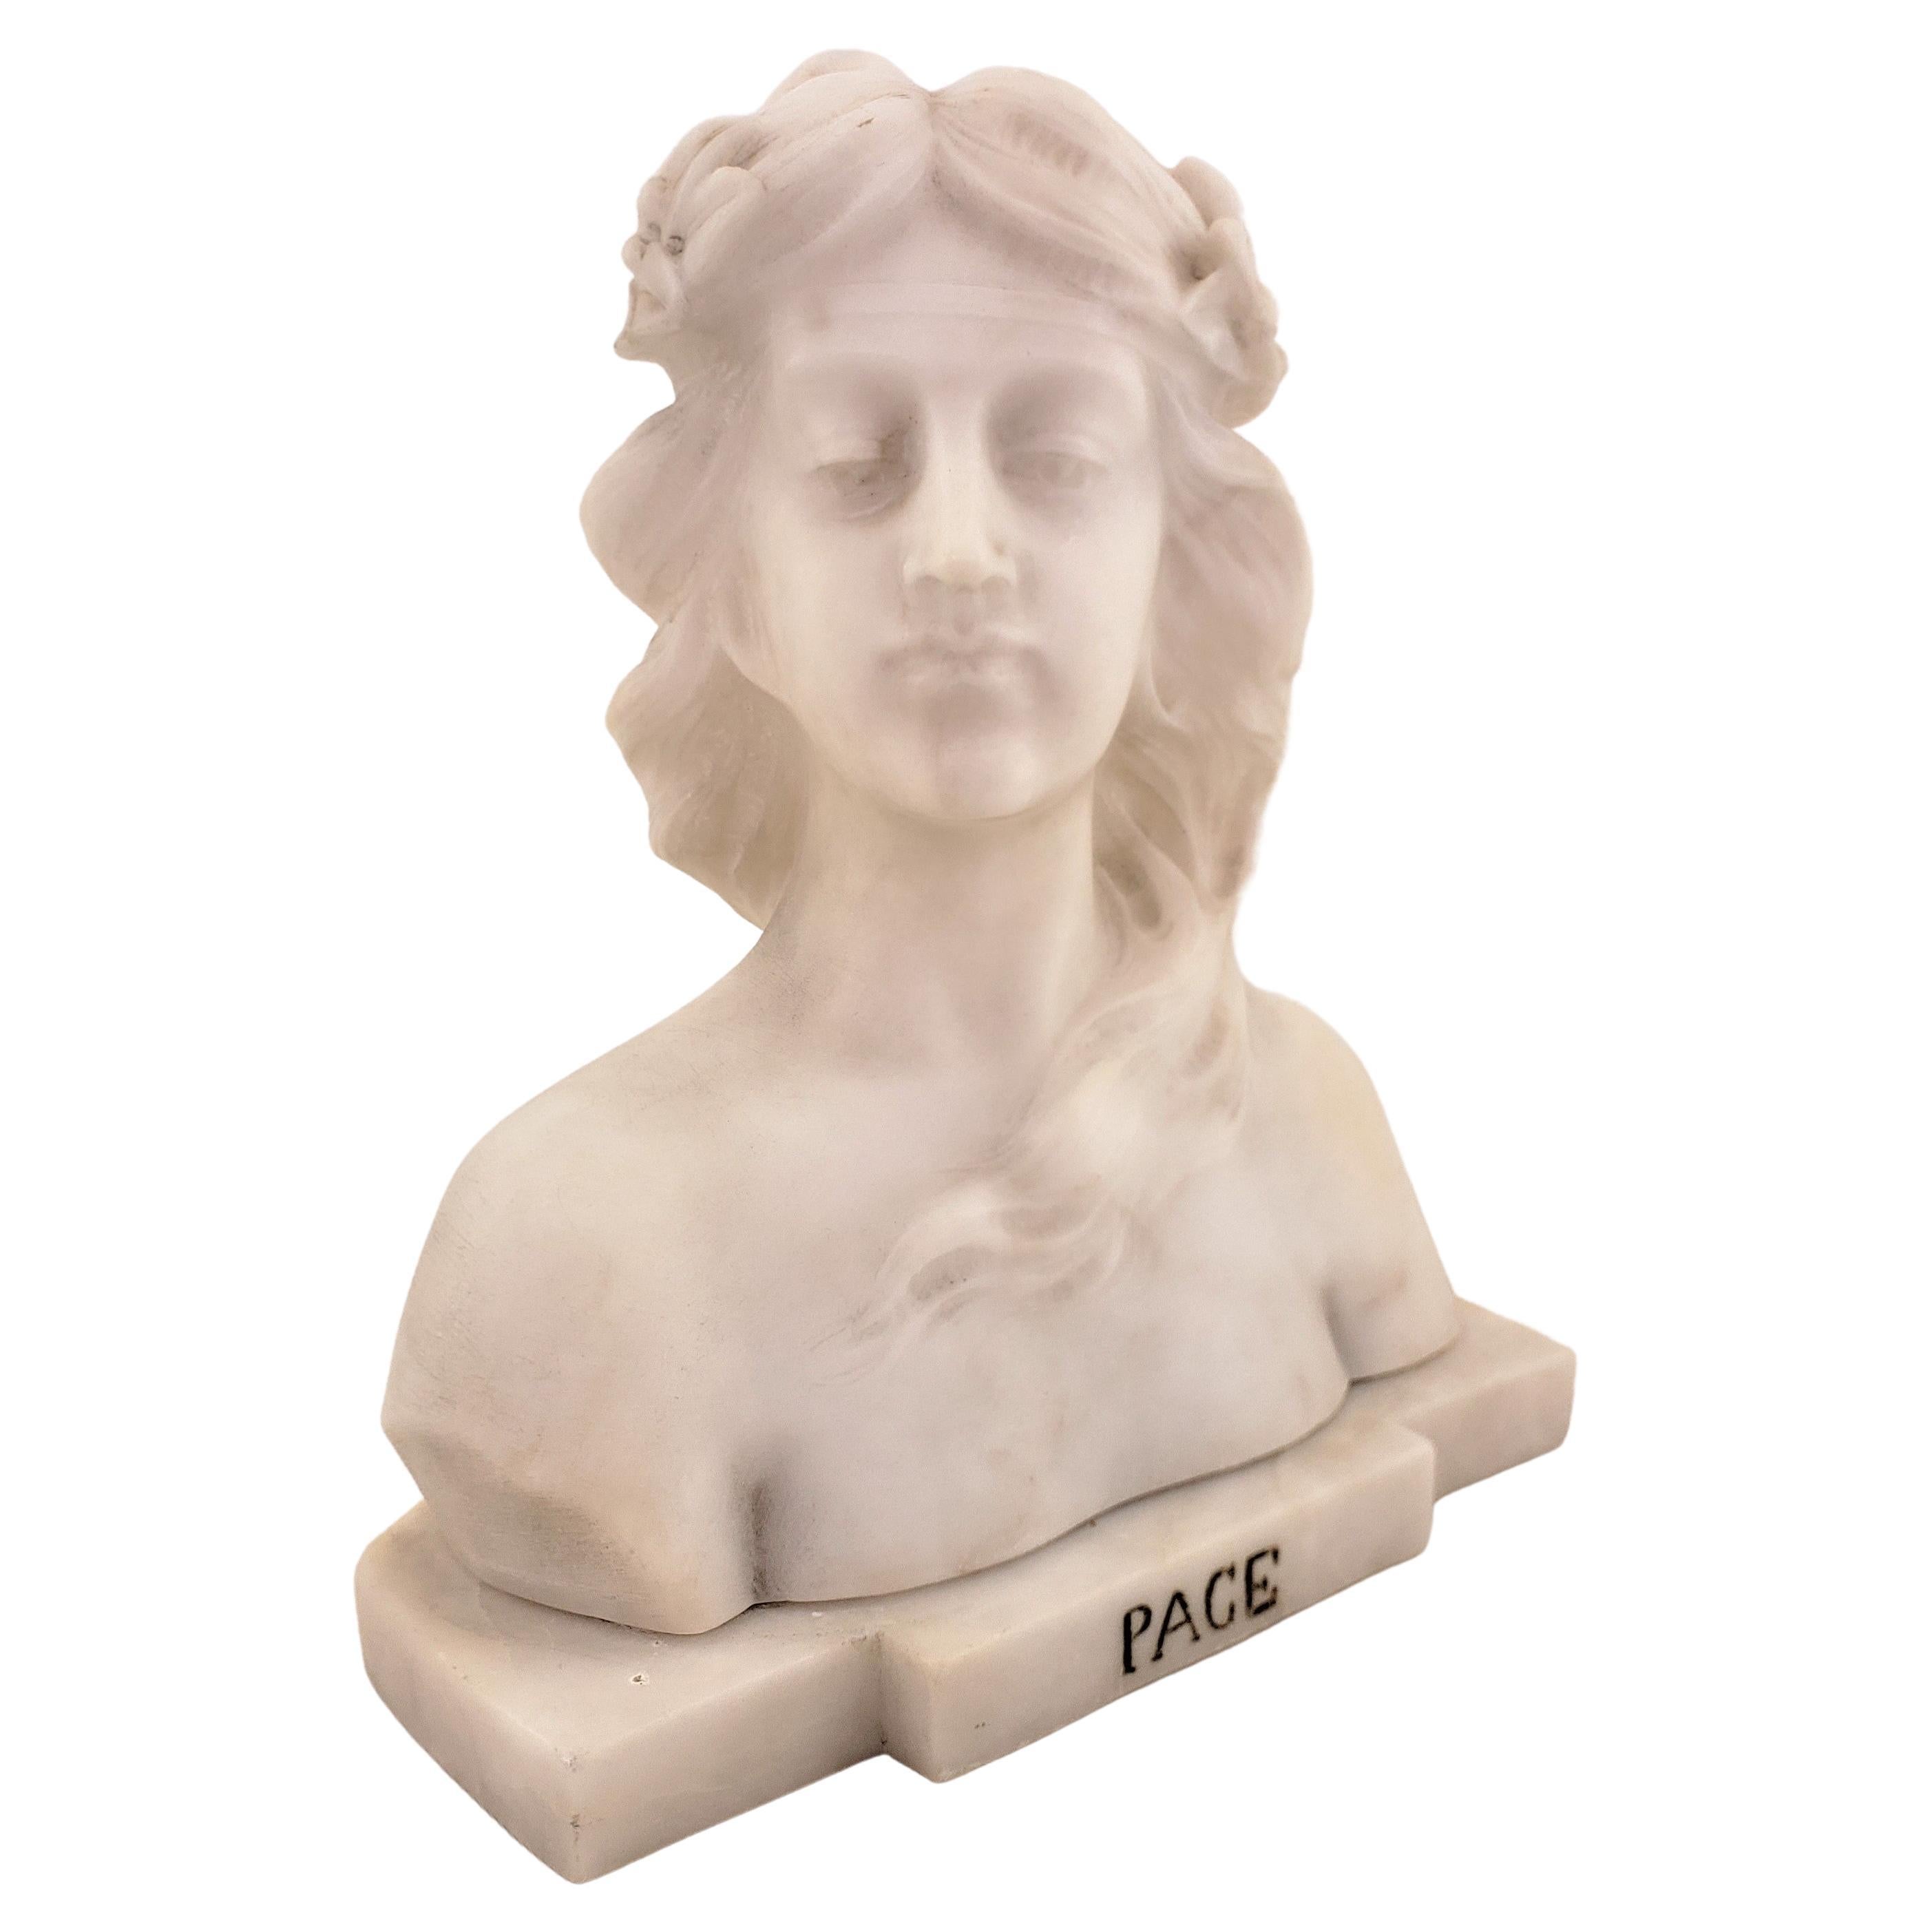 Buste ou sculpture ancienne en marbre blanc représentant une jeune femme « Pace », signée E. Zocchi